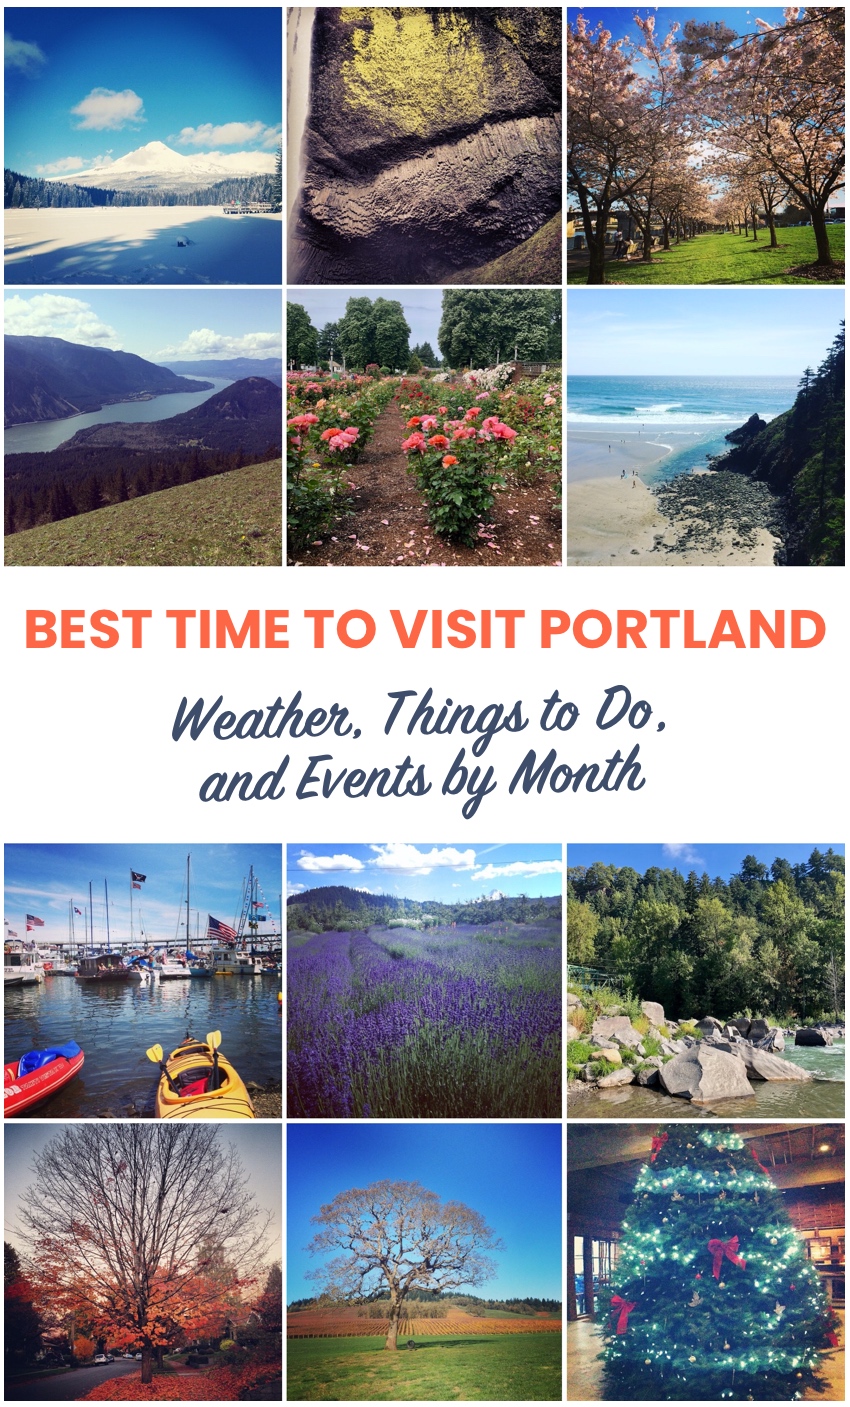 Visit Portland: Best of Portland Tourism